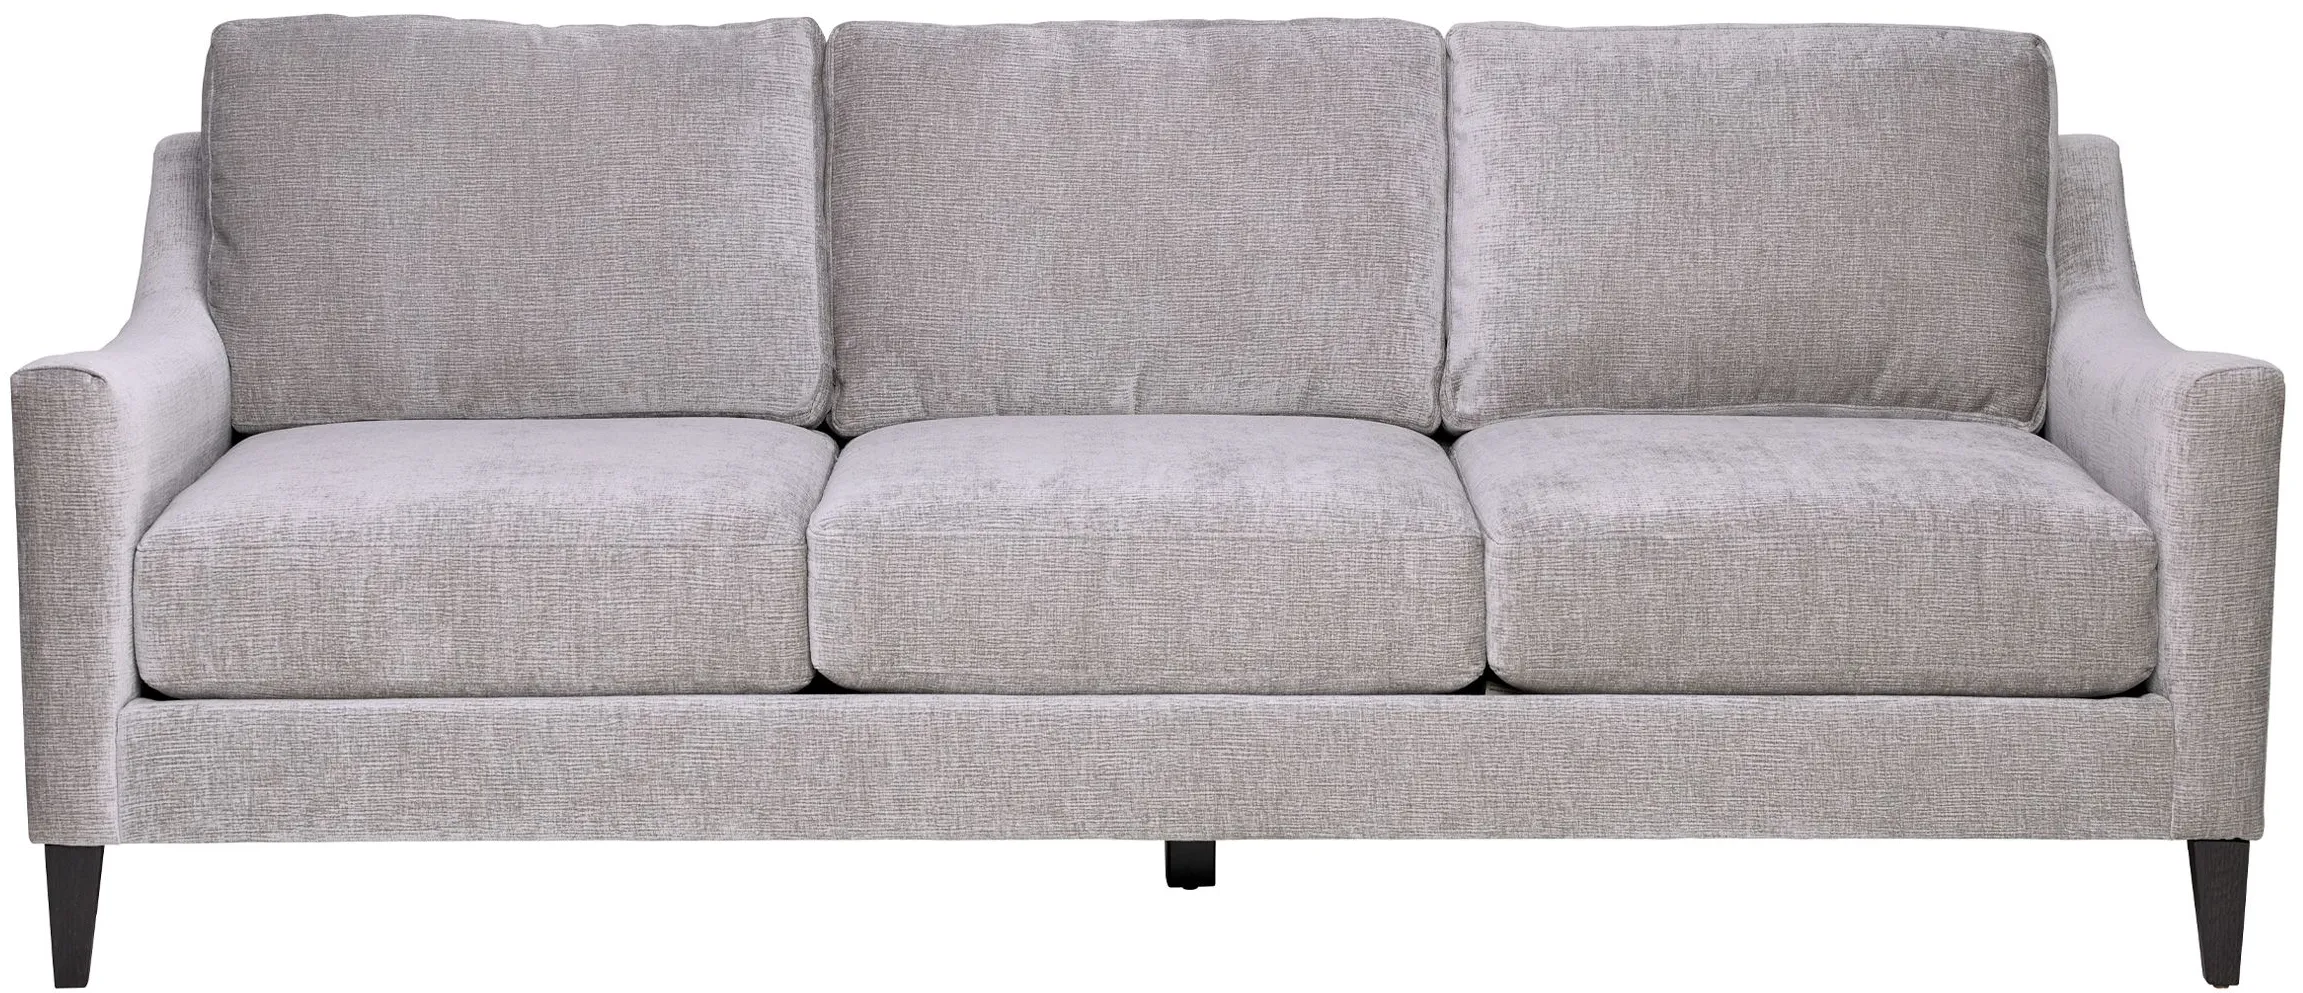 Macie Sofa by Jonathan Louis